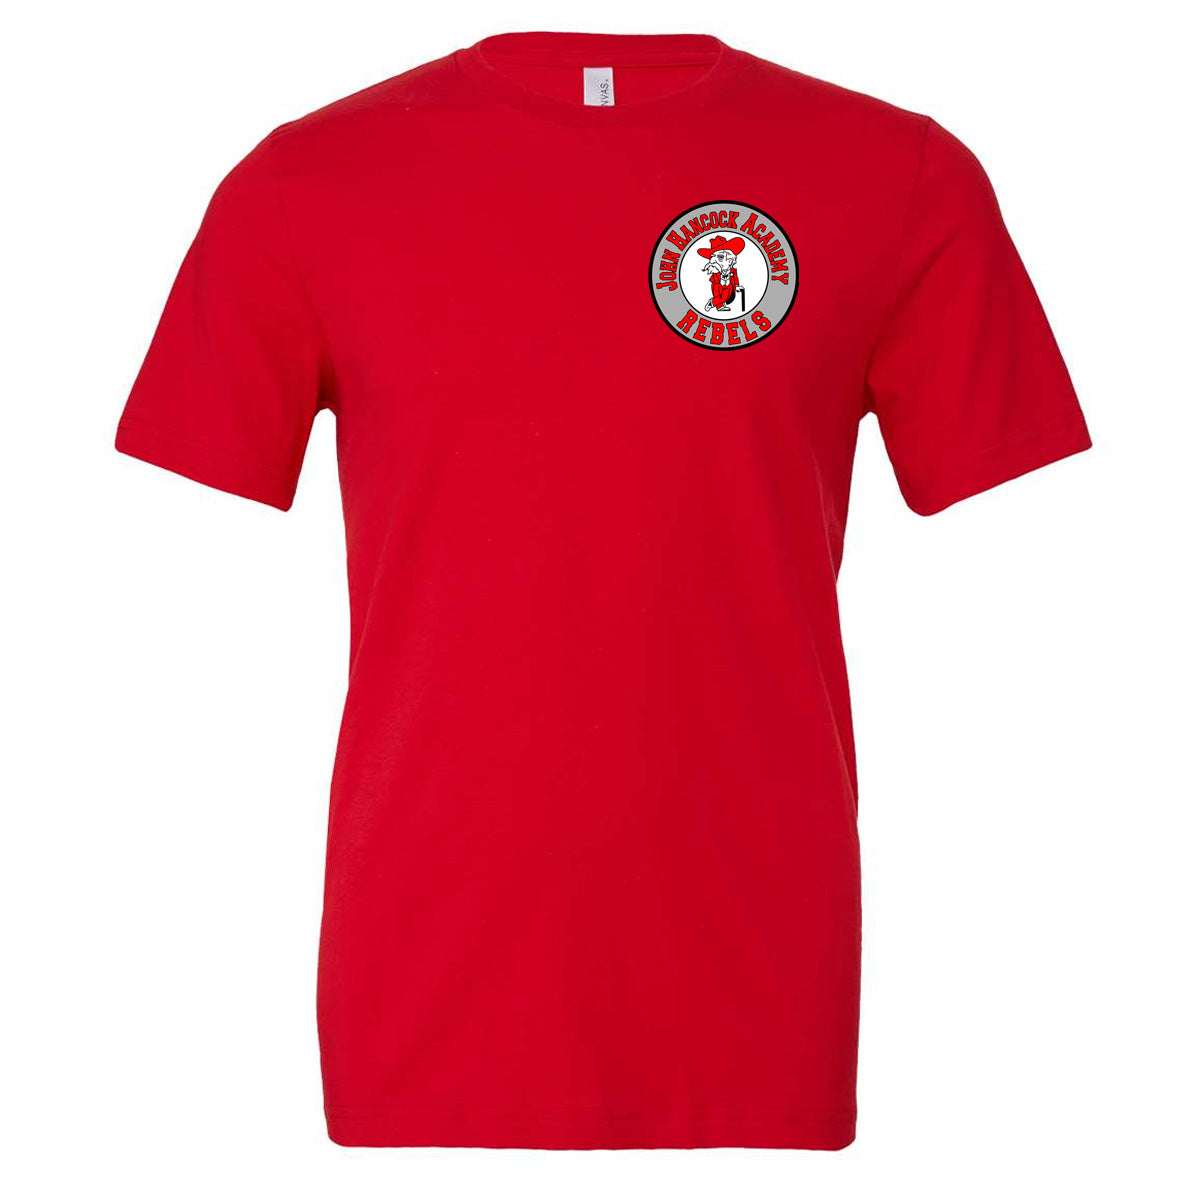 John Hancock - Circle logo - Red (Tee/DriFit/Hoodie/Sweatshirt)